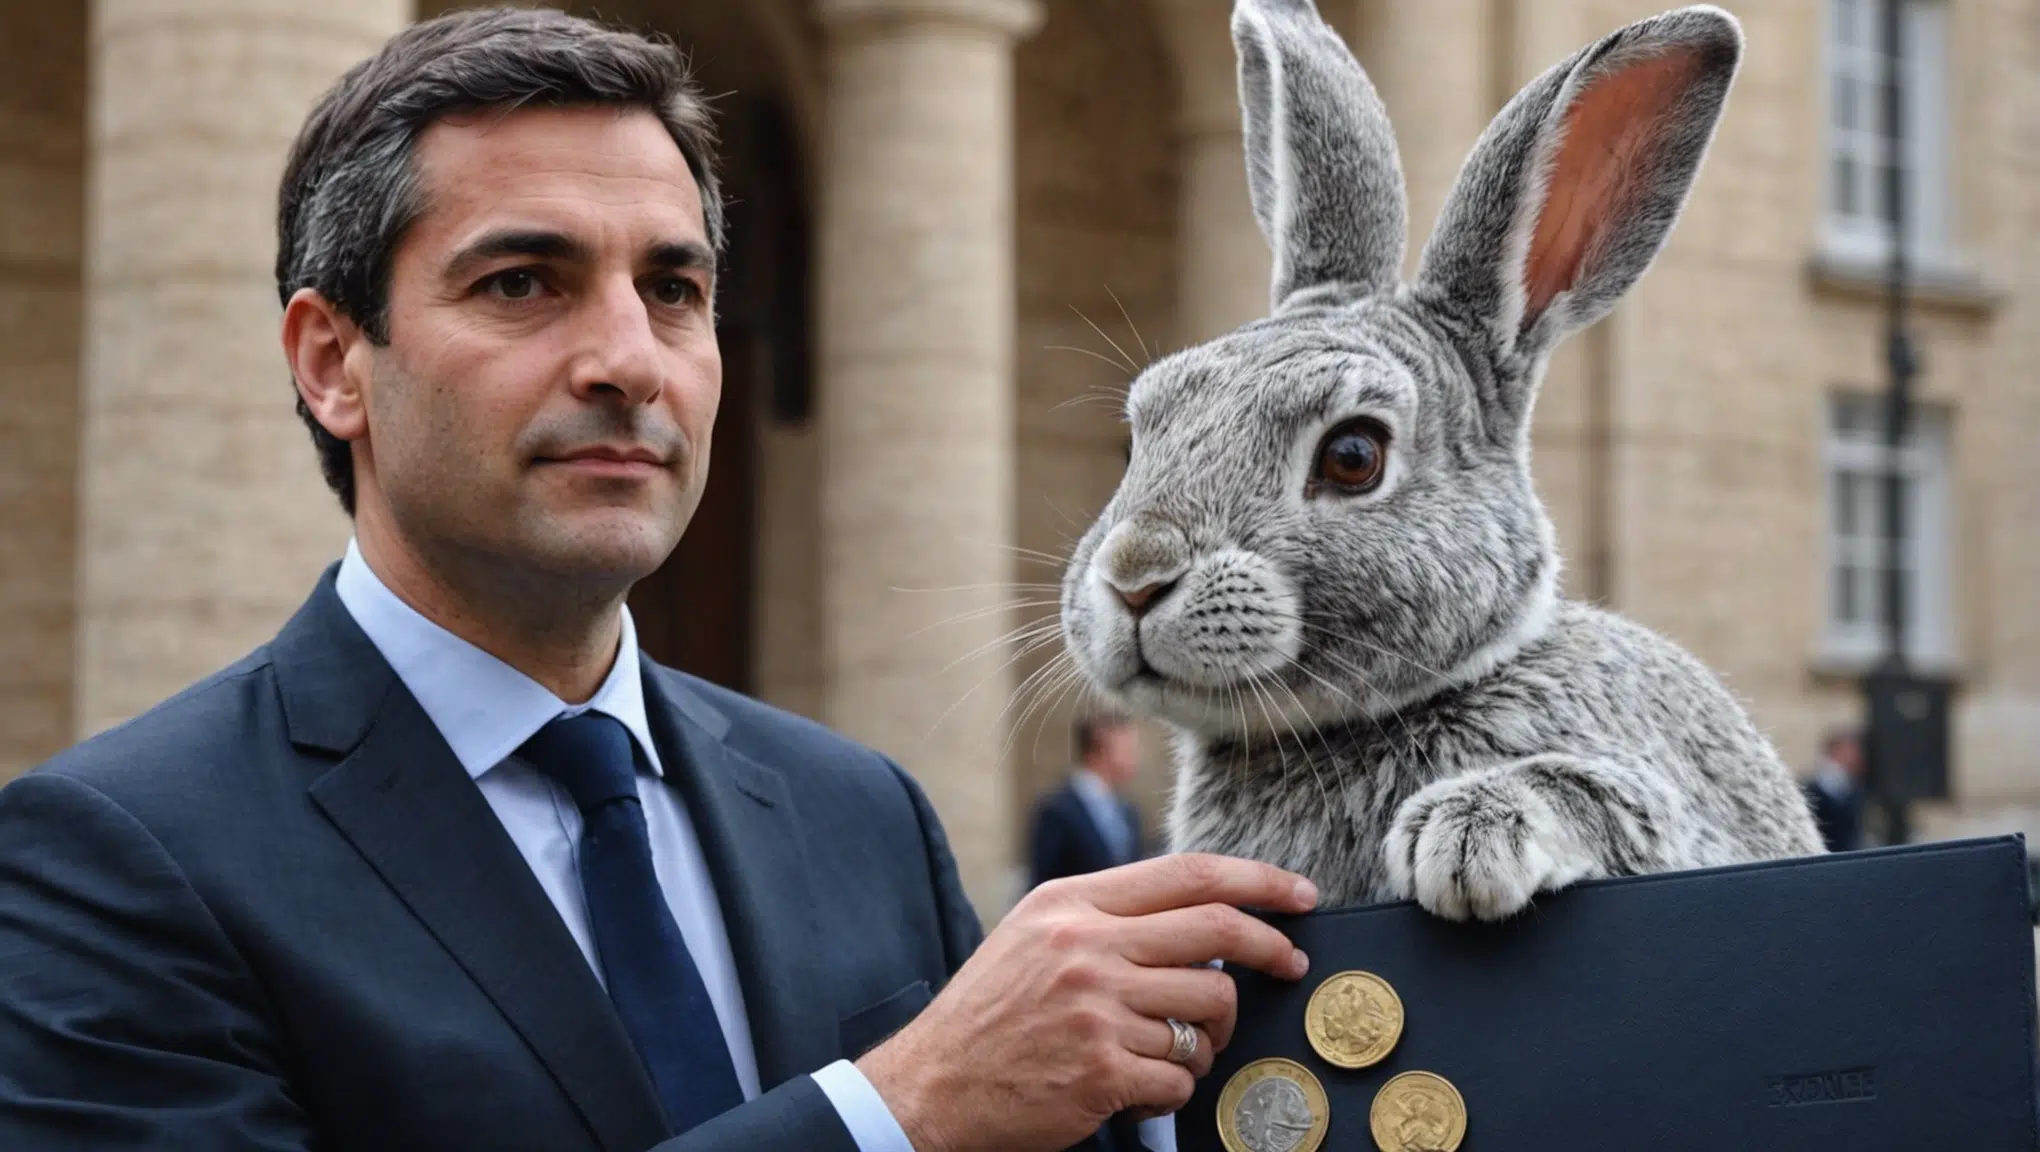 le ministre gabriel attal annonce de nouvelles mesures concernant la taxe lapin pour soulager financièrement les français. découvrez ce que cela implique pour vous.